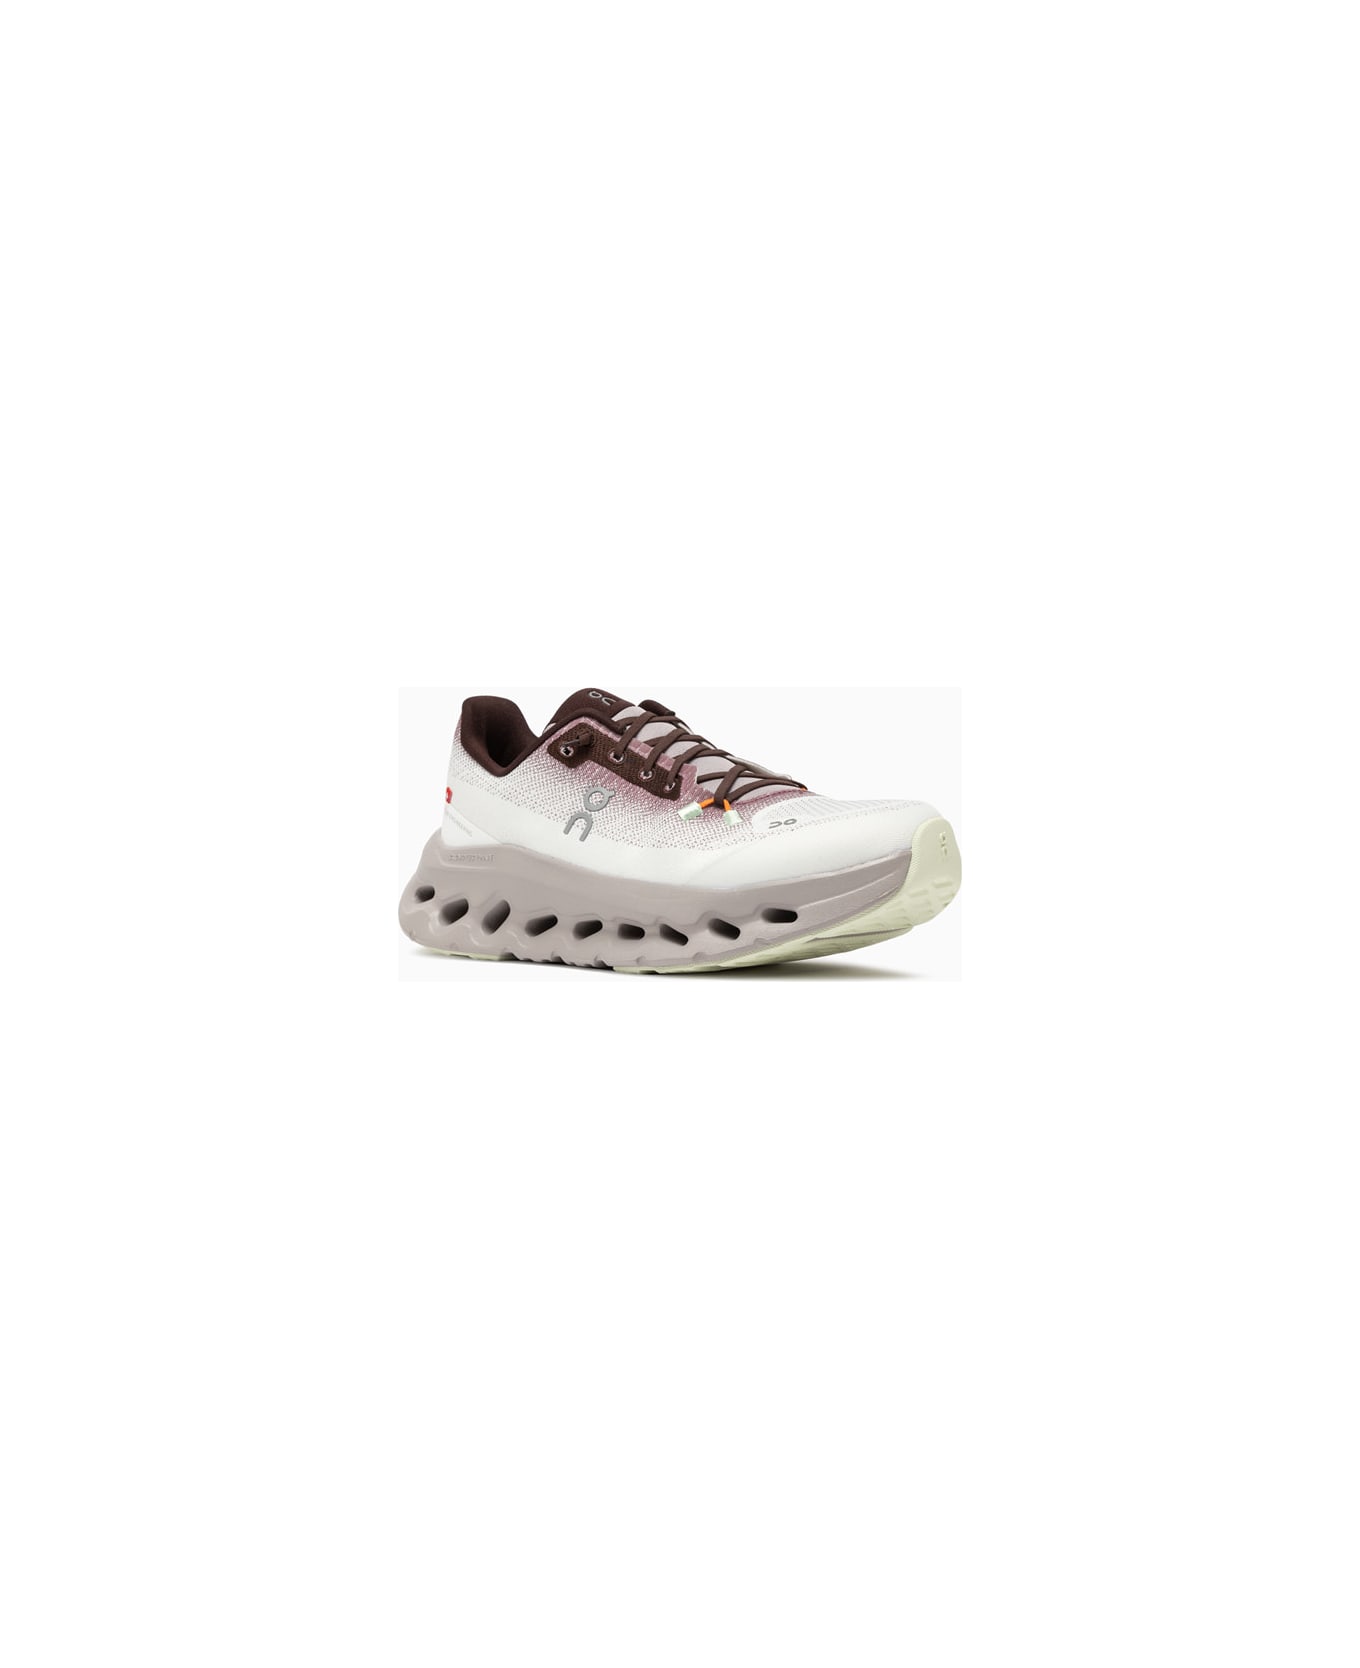 ON Cloudtilt Sneakers 3we10052346 - Purple スニーカー